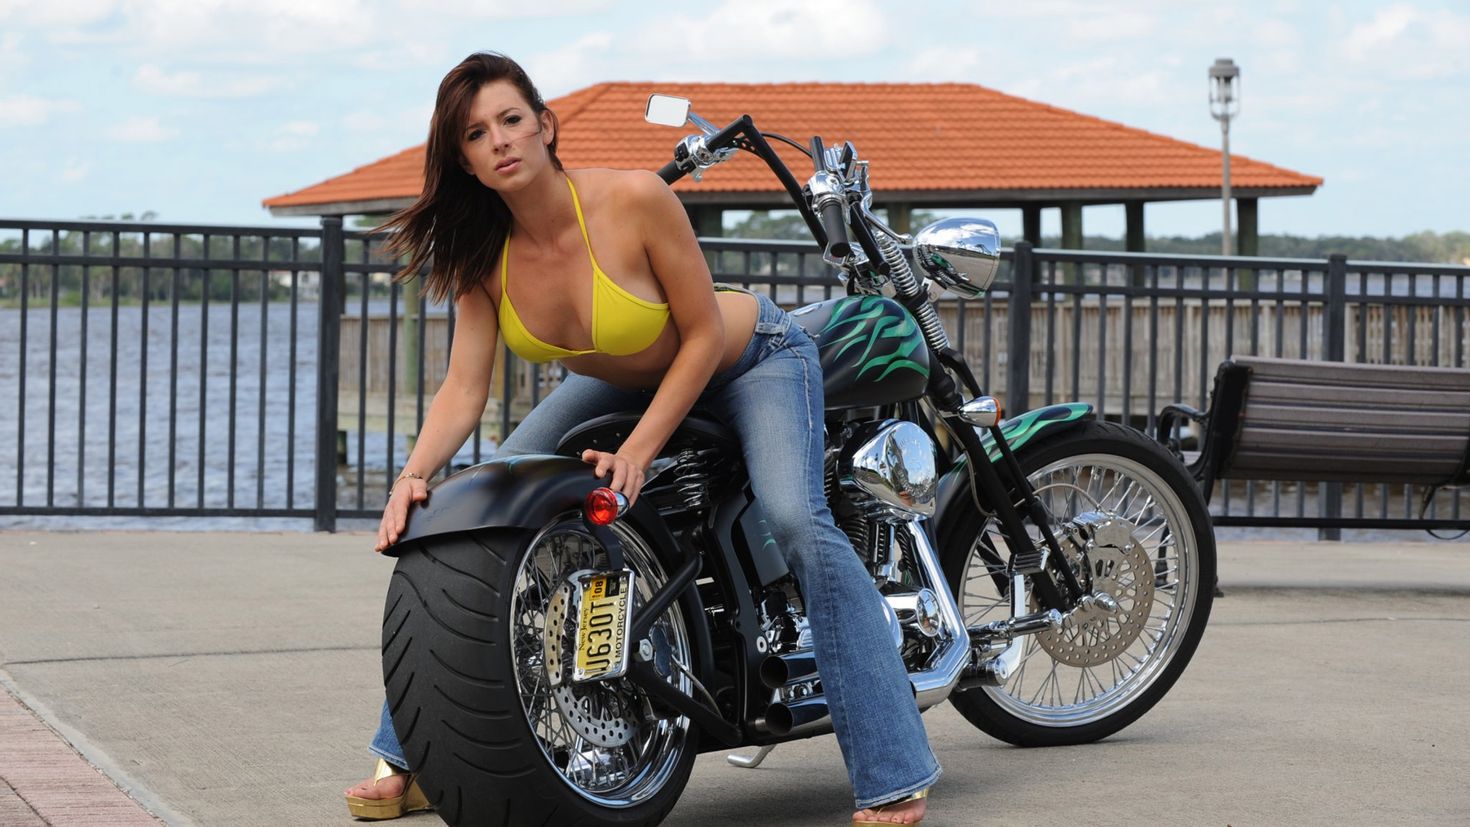 Фото с мотоциклов с девушками